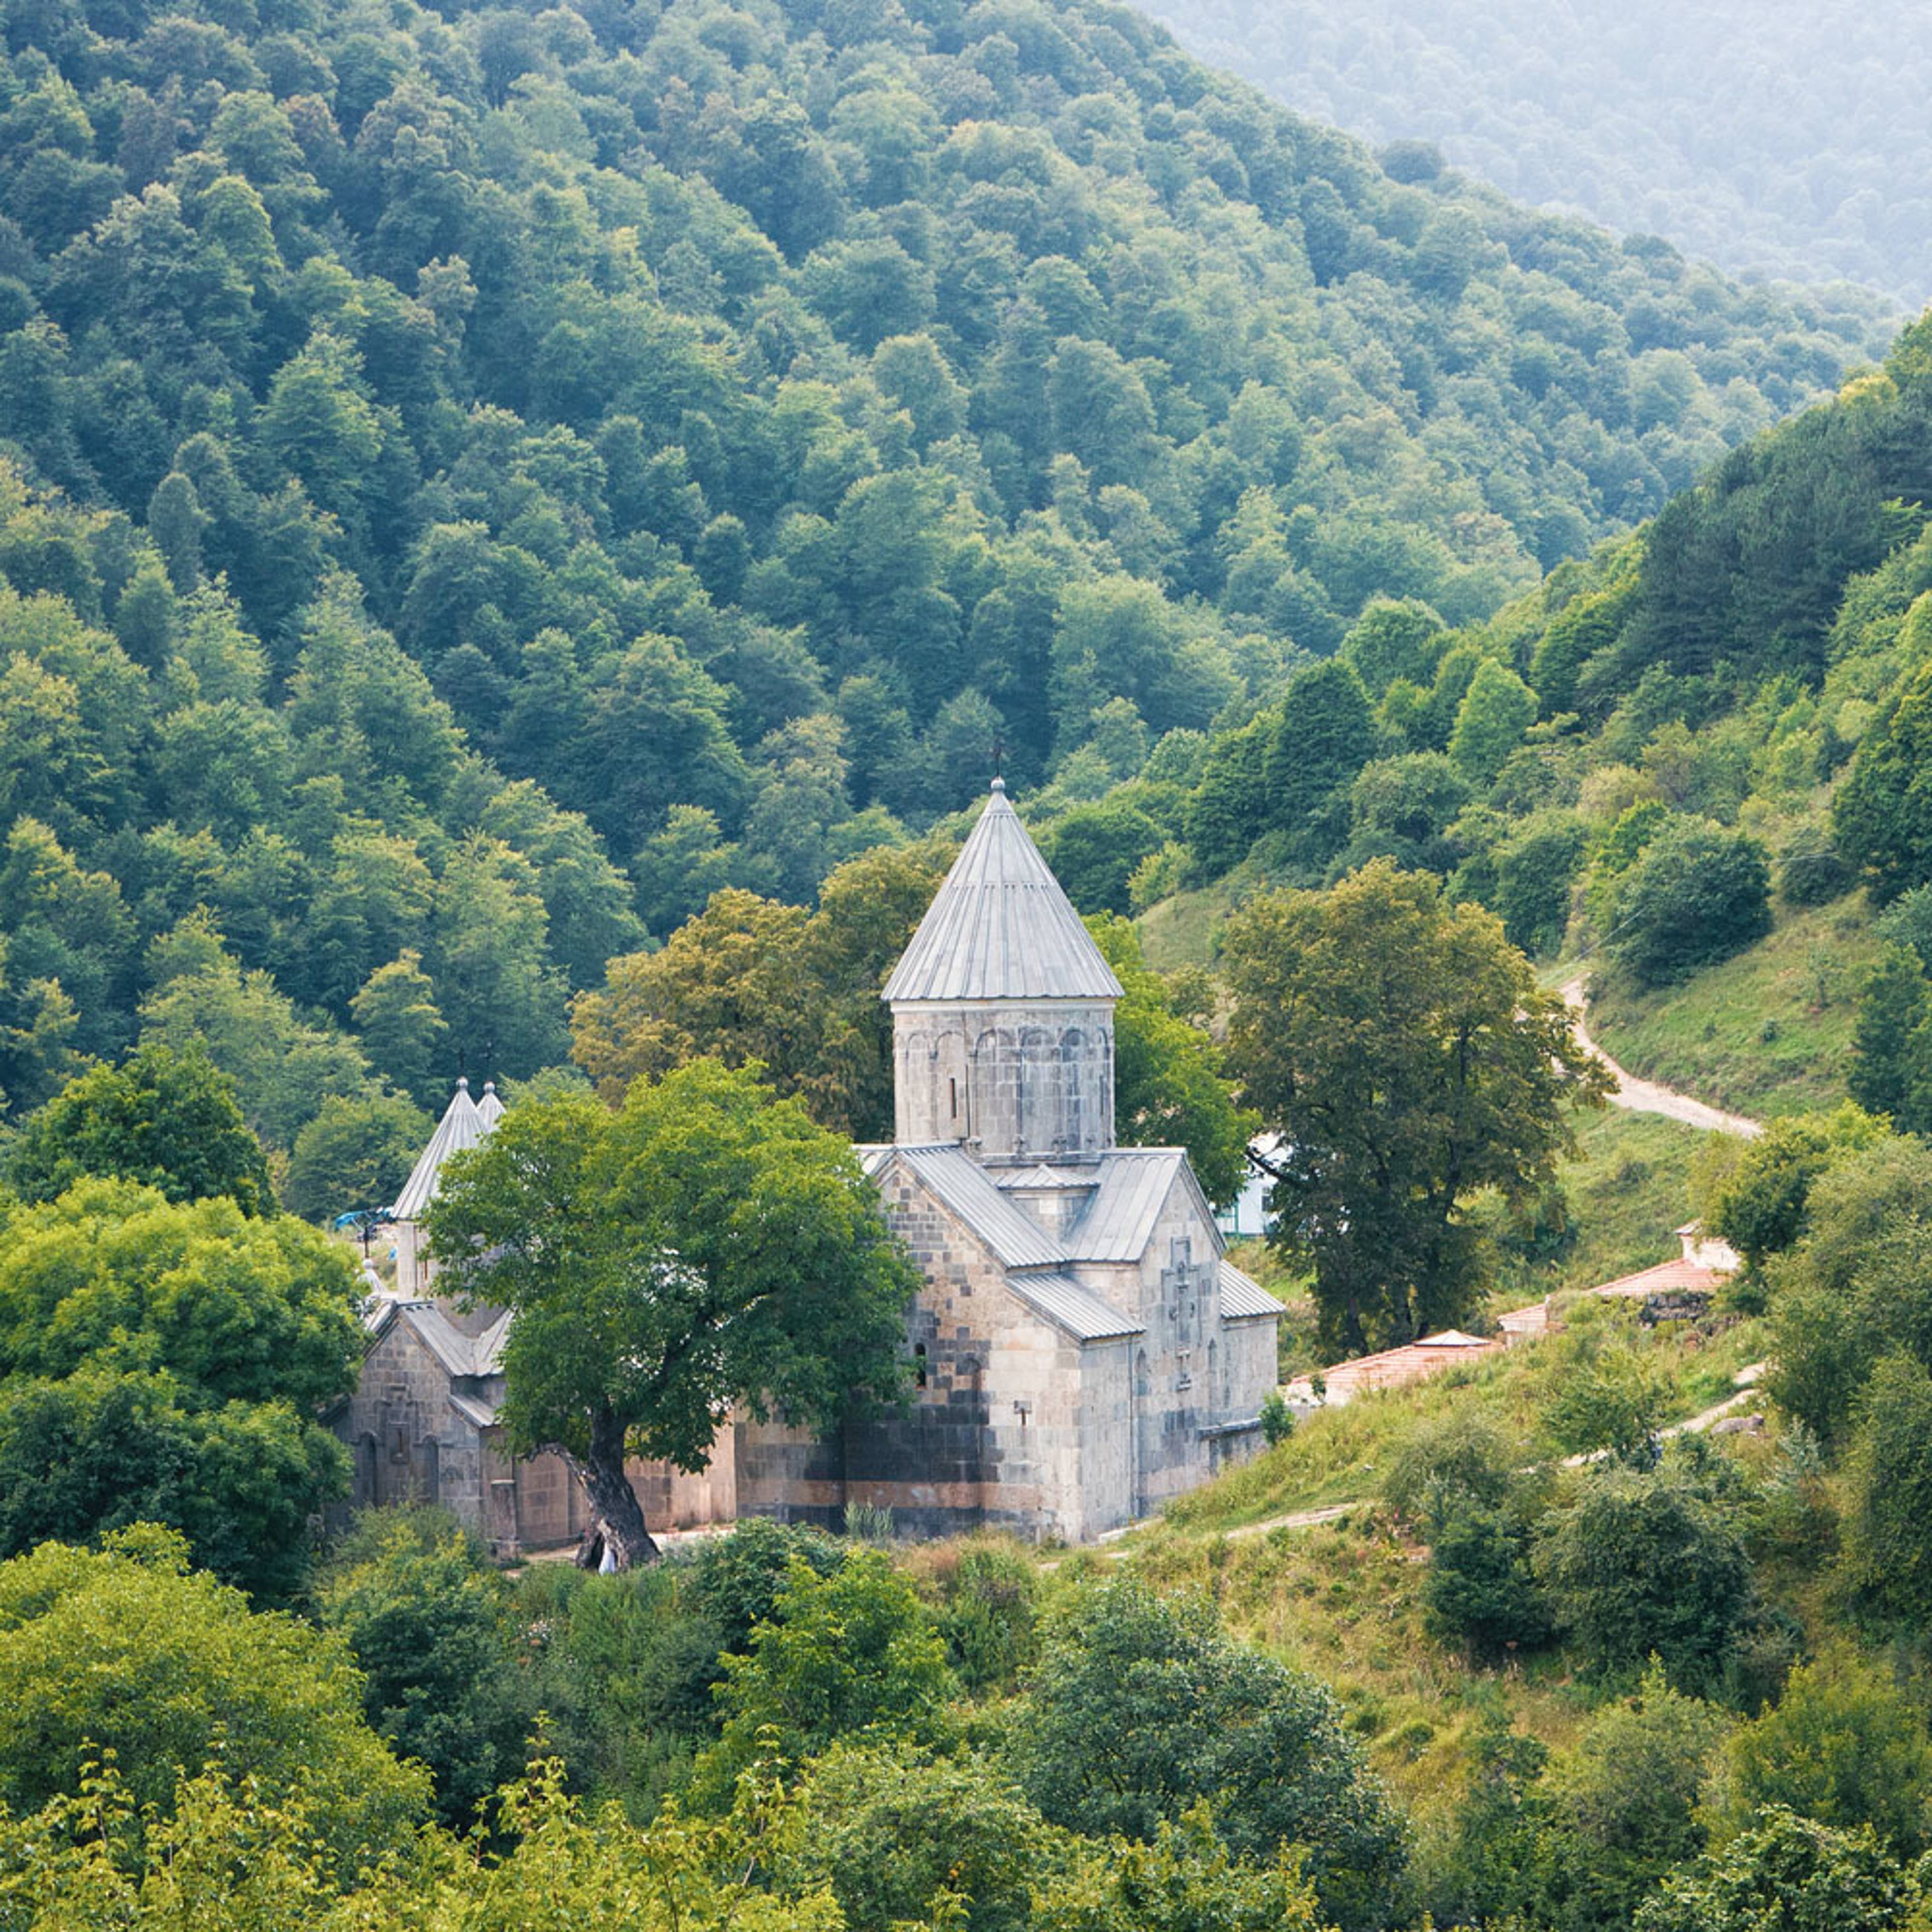 Naturreisen Armenien - Reise jetzt individuell gestalten